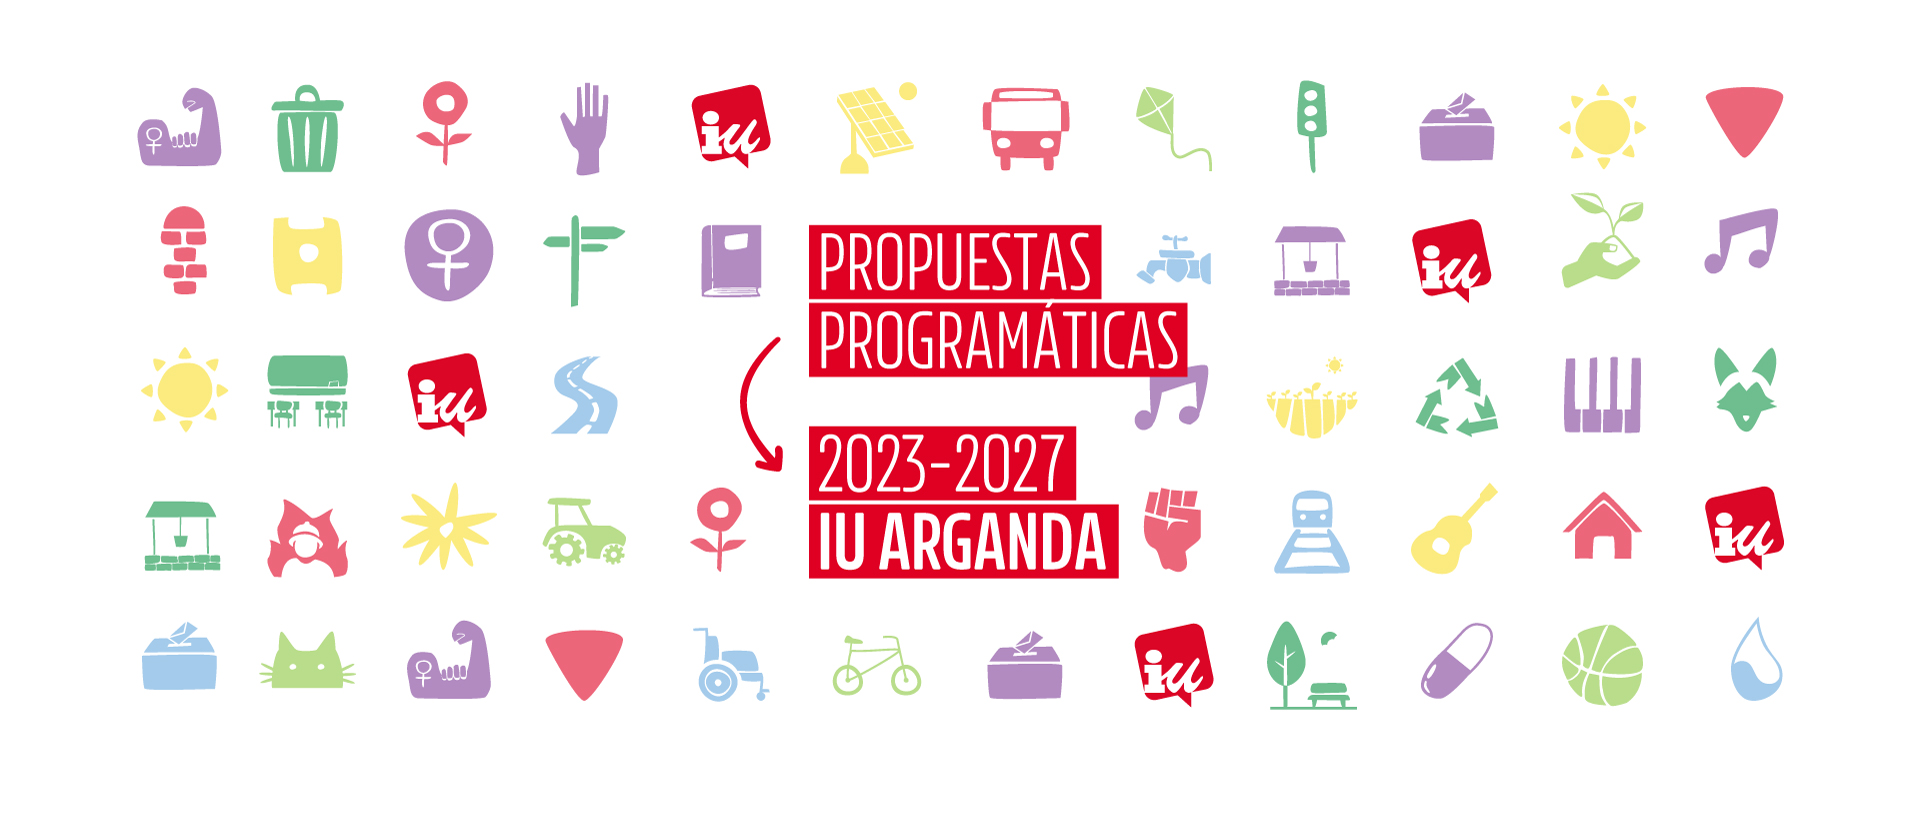 IU Arganda - Propuestas programáticas